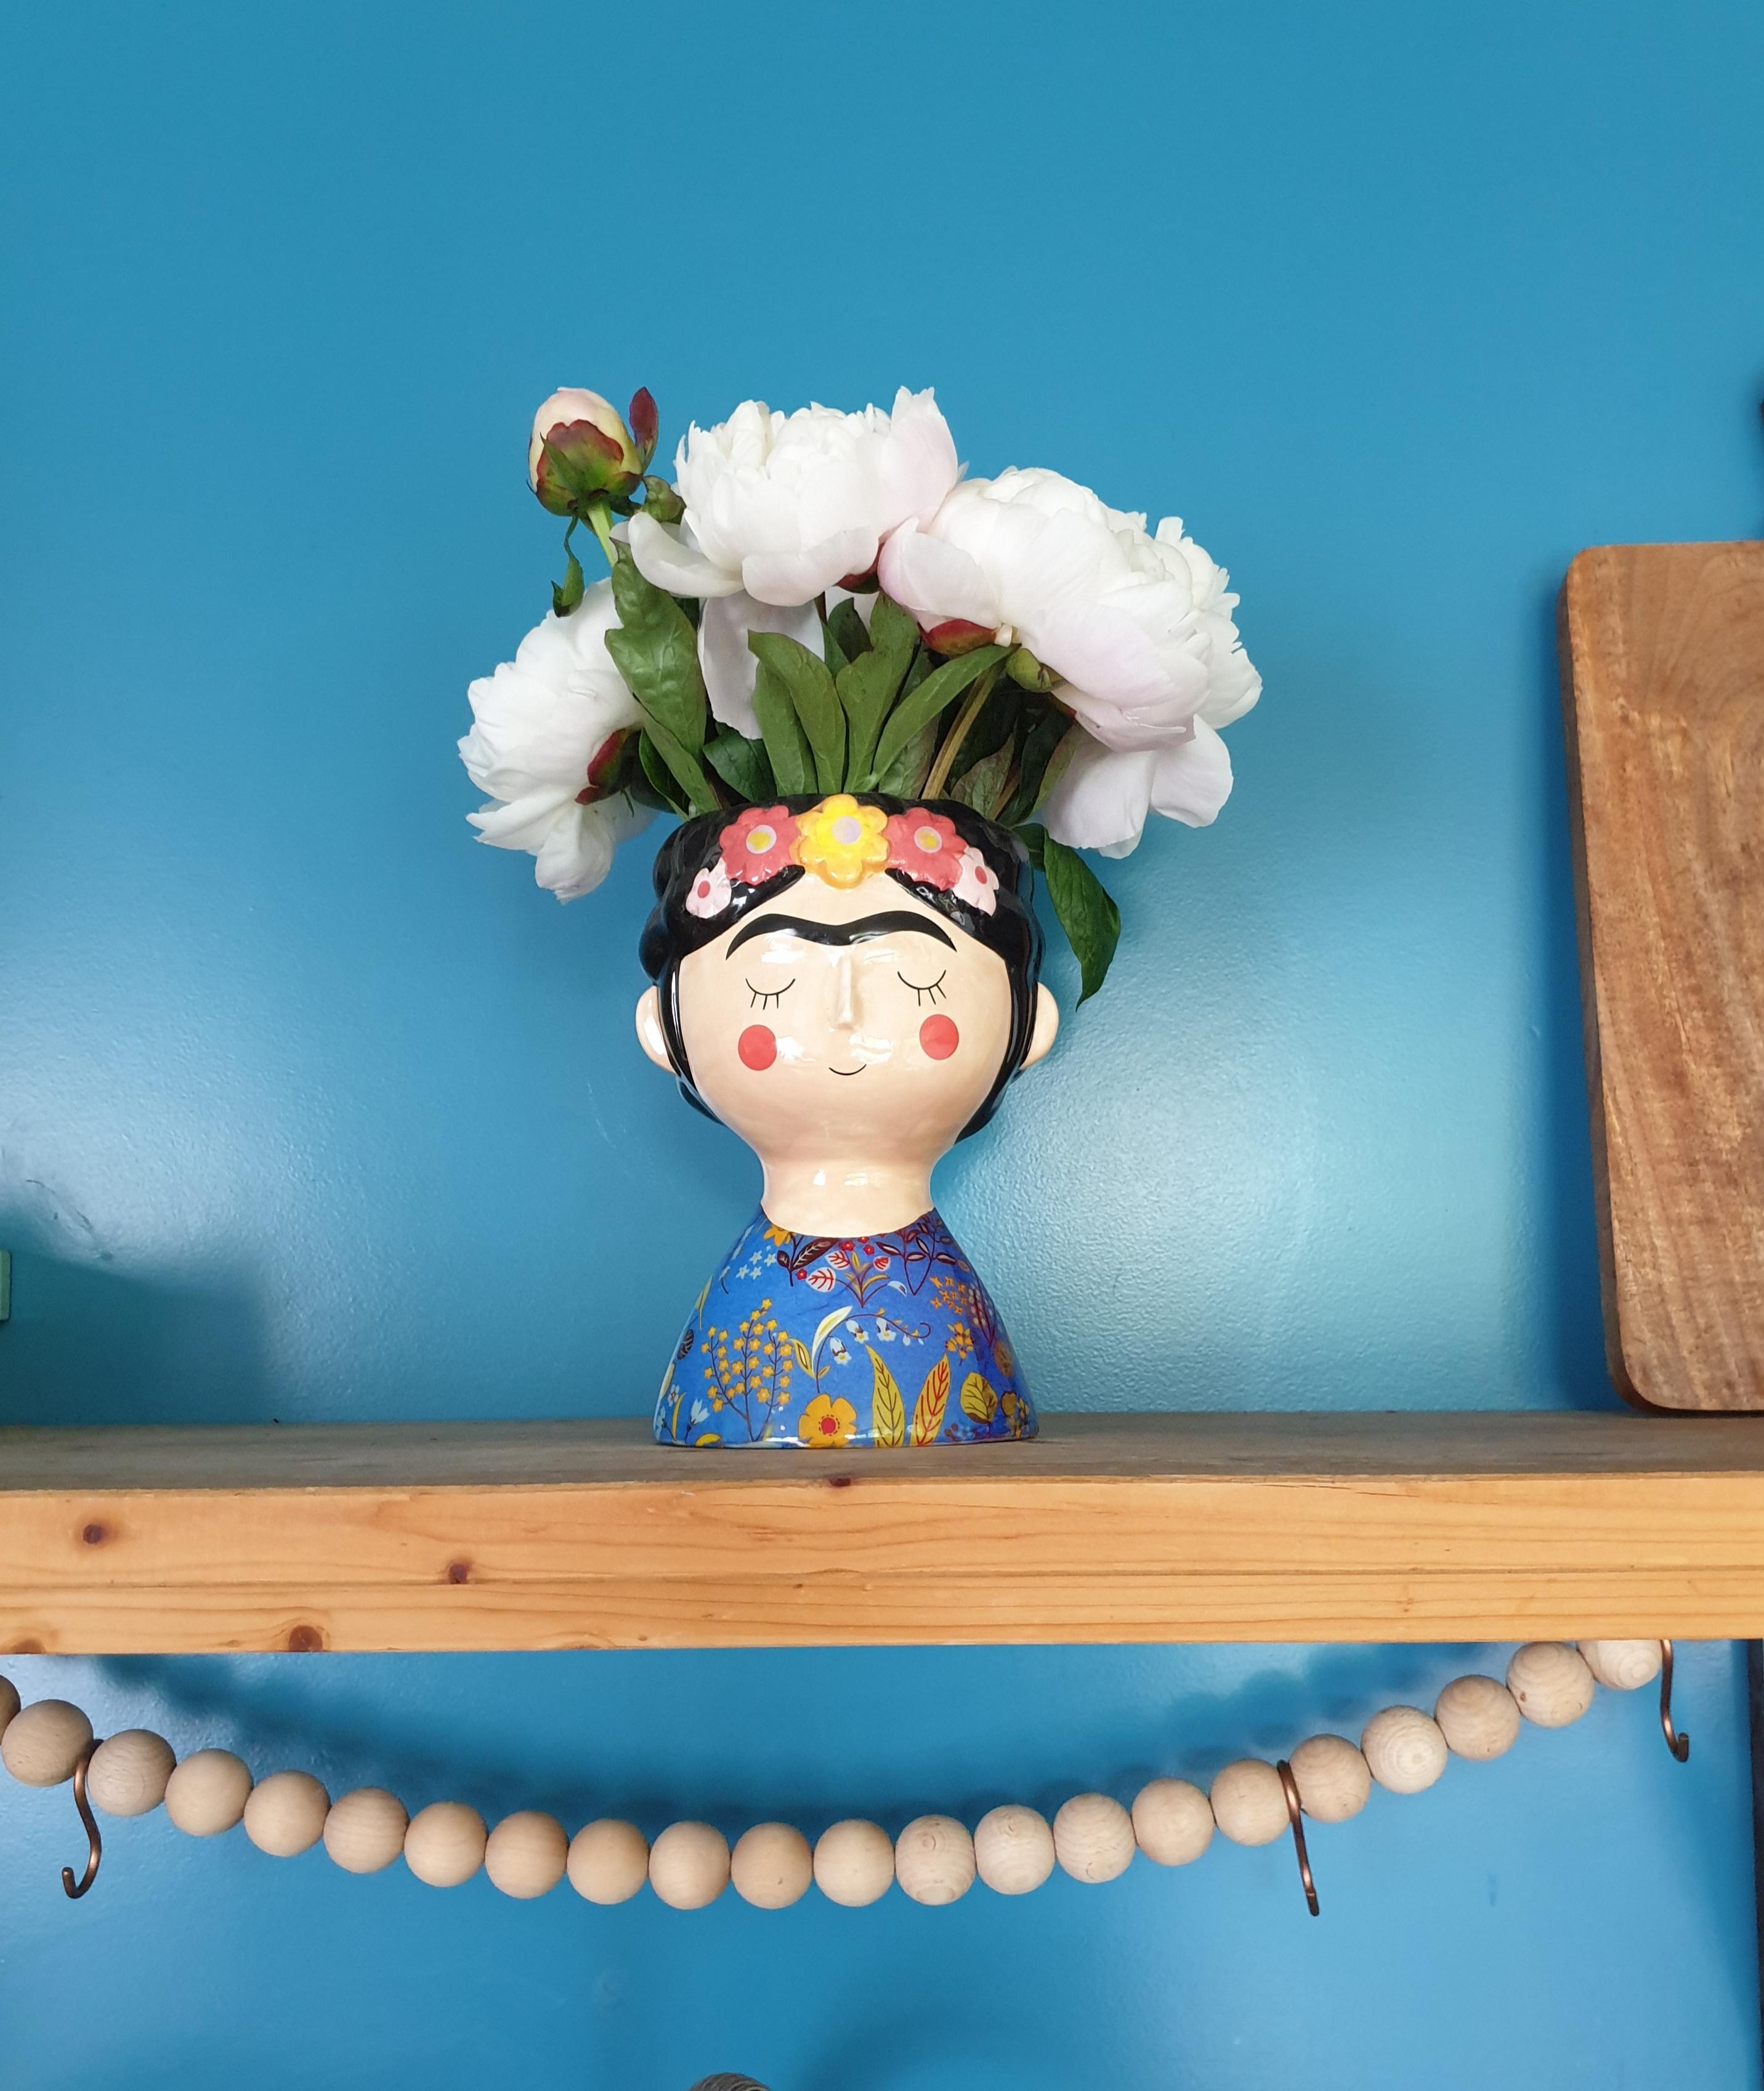 Unsere Frida hat endlich wieder mal Kopfschmuck bekommen..
#Vase#Blumenliebe#Regal
#Küchenregal